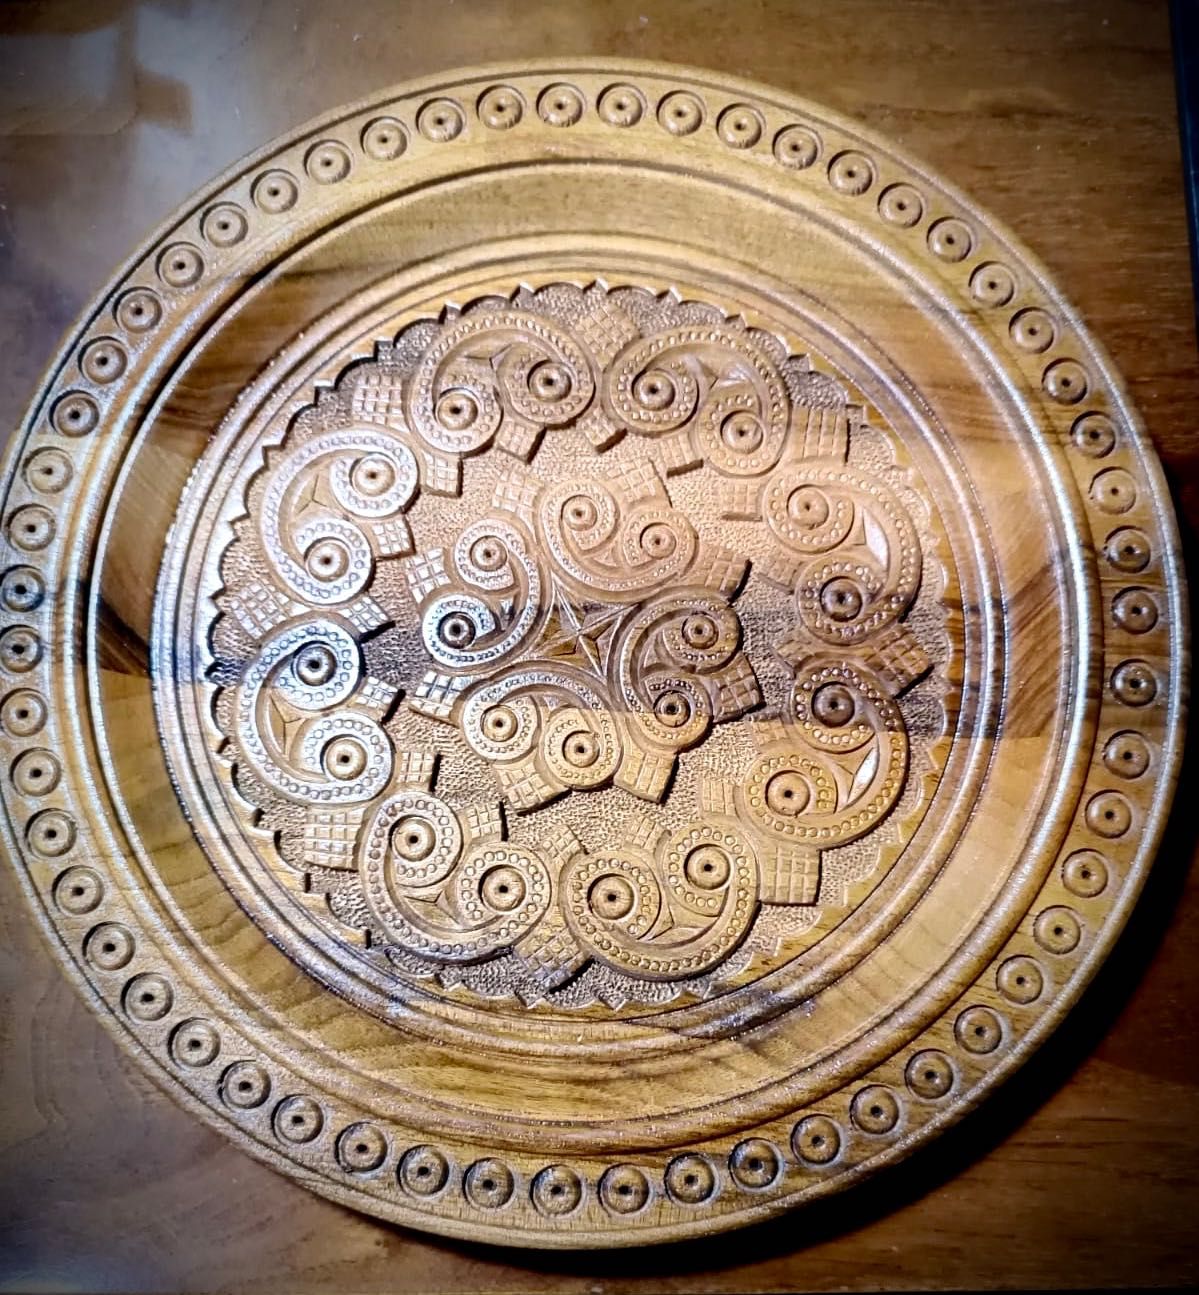 Деревянная сувенирная тарелка